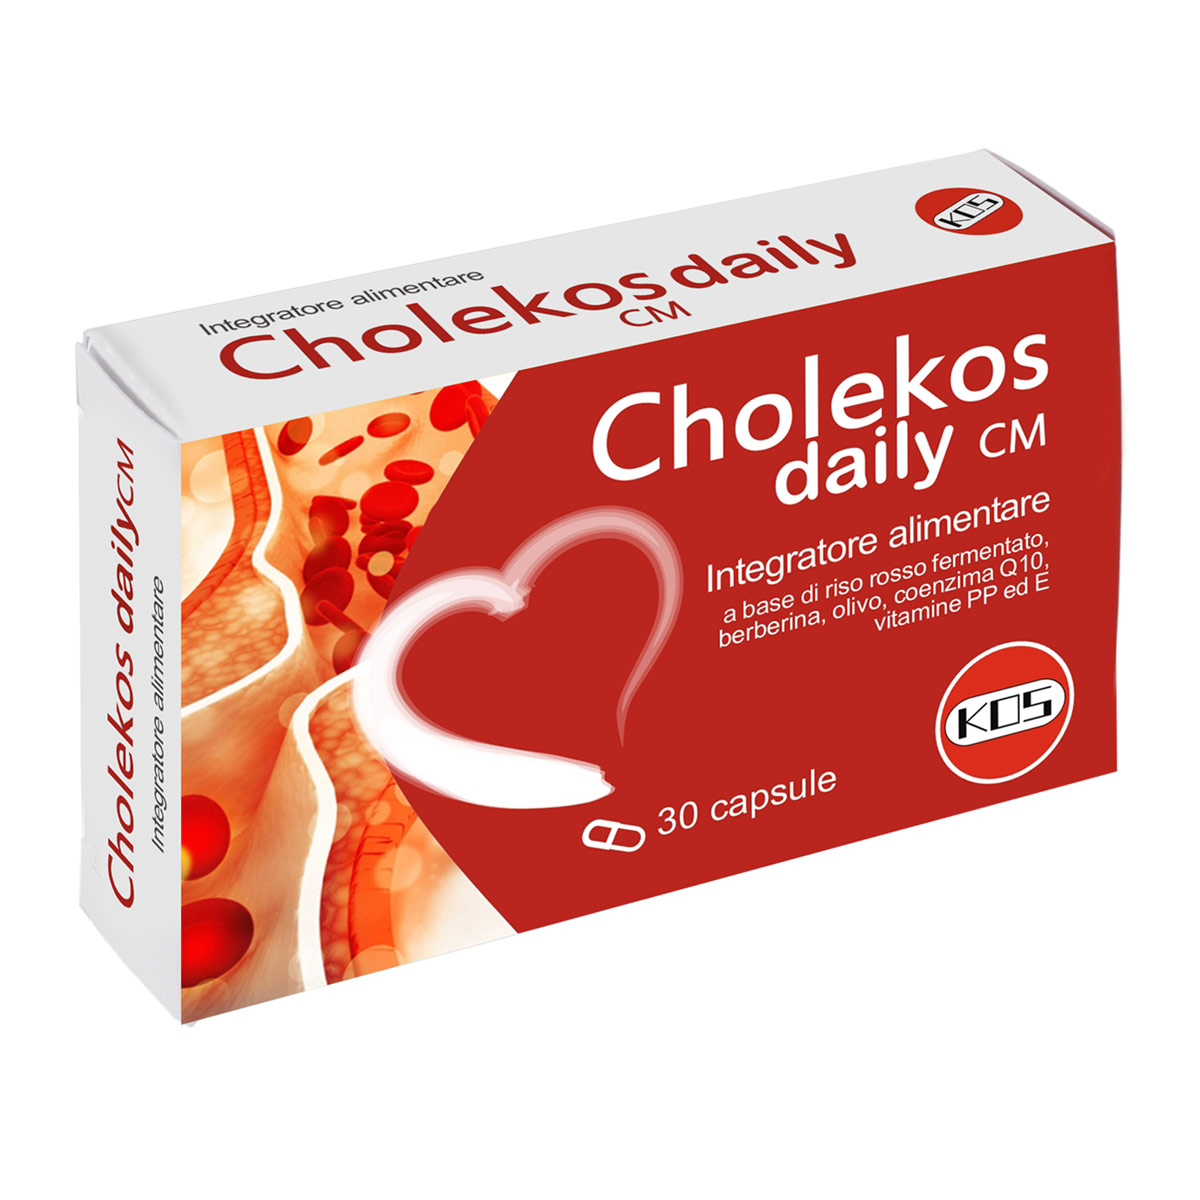 Cholekos Daily CM 30 capsule